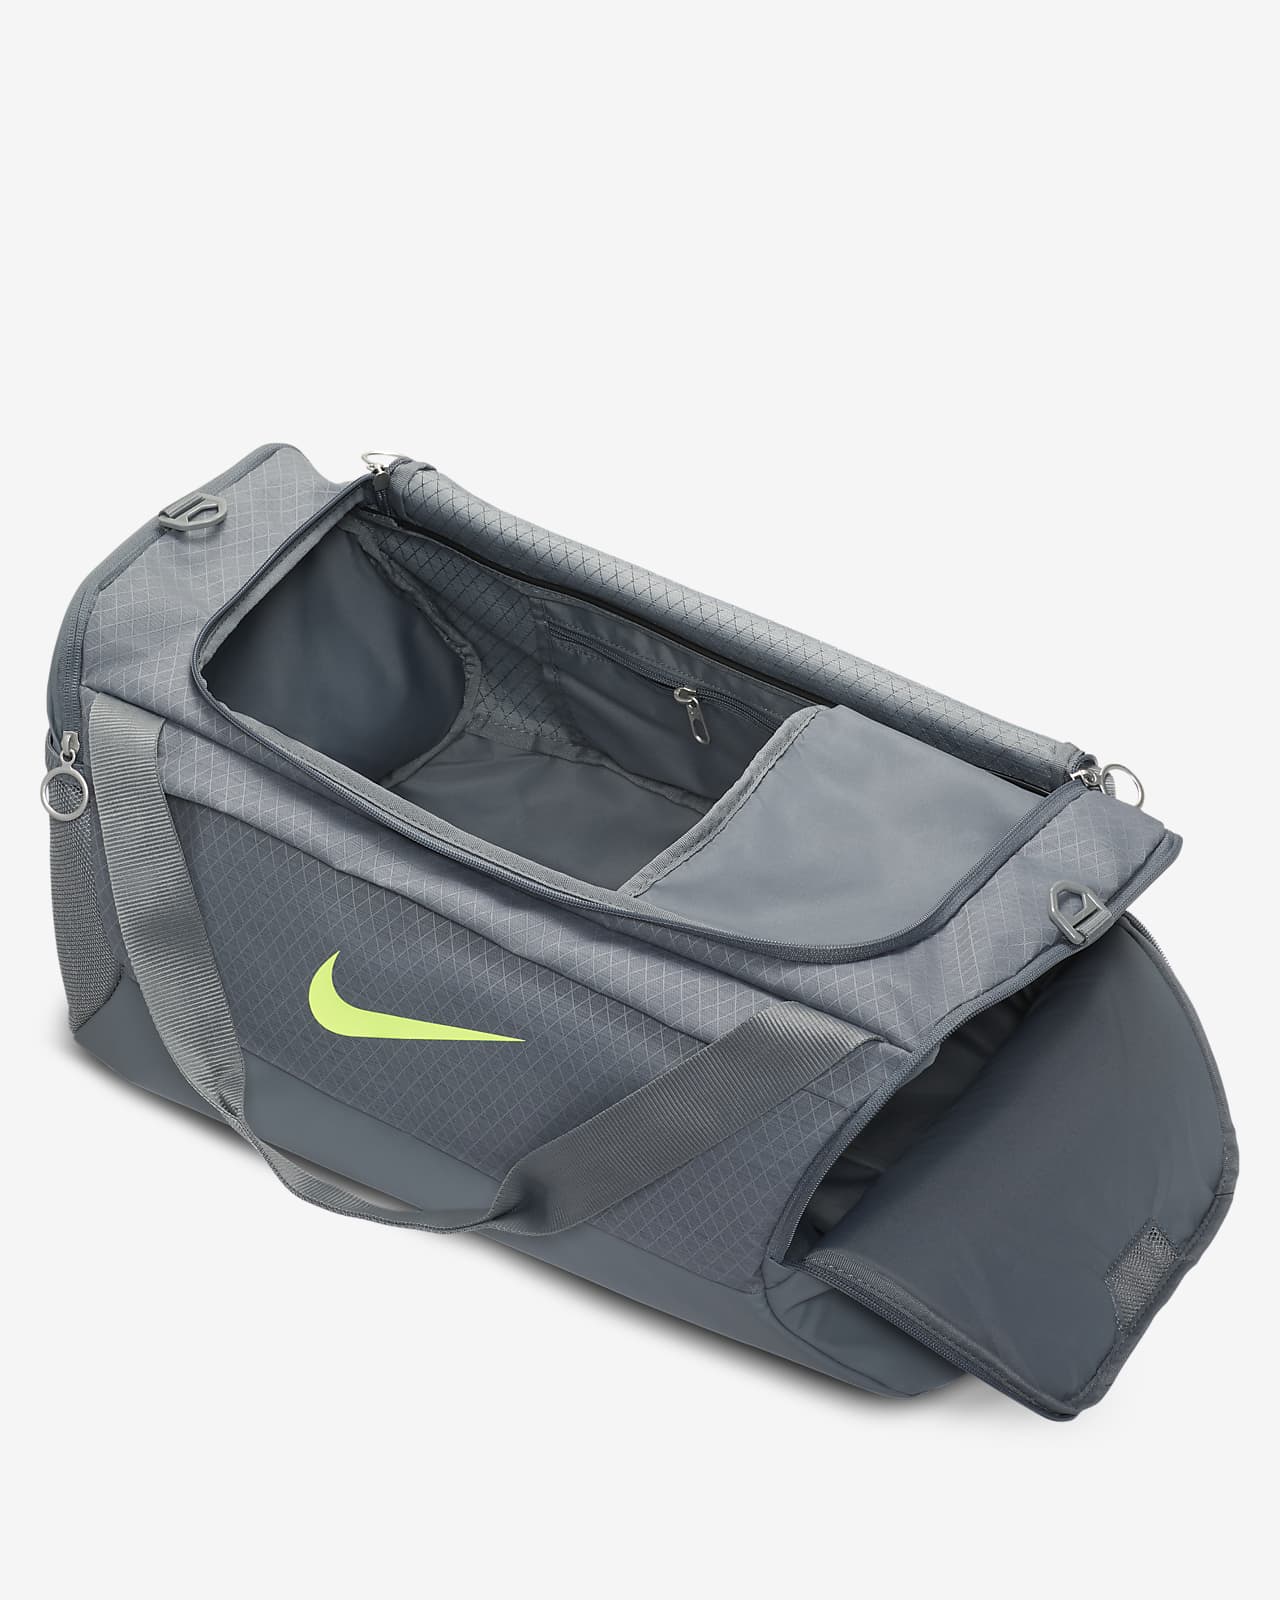 Nike, Brasilia Winterized sportstaske, small, Unisex, Grå